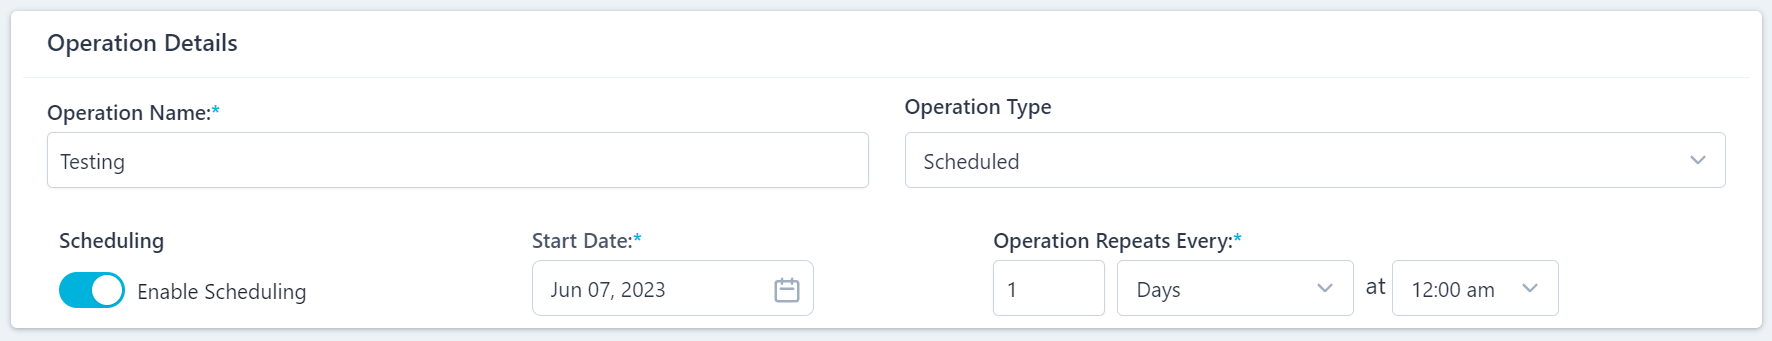 Scheduled Operation